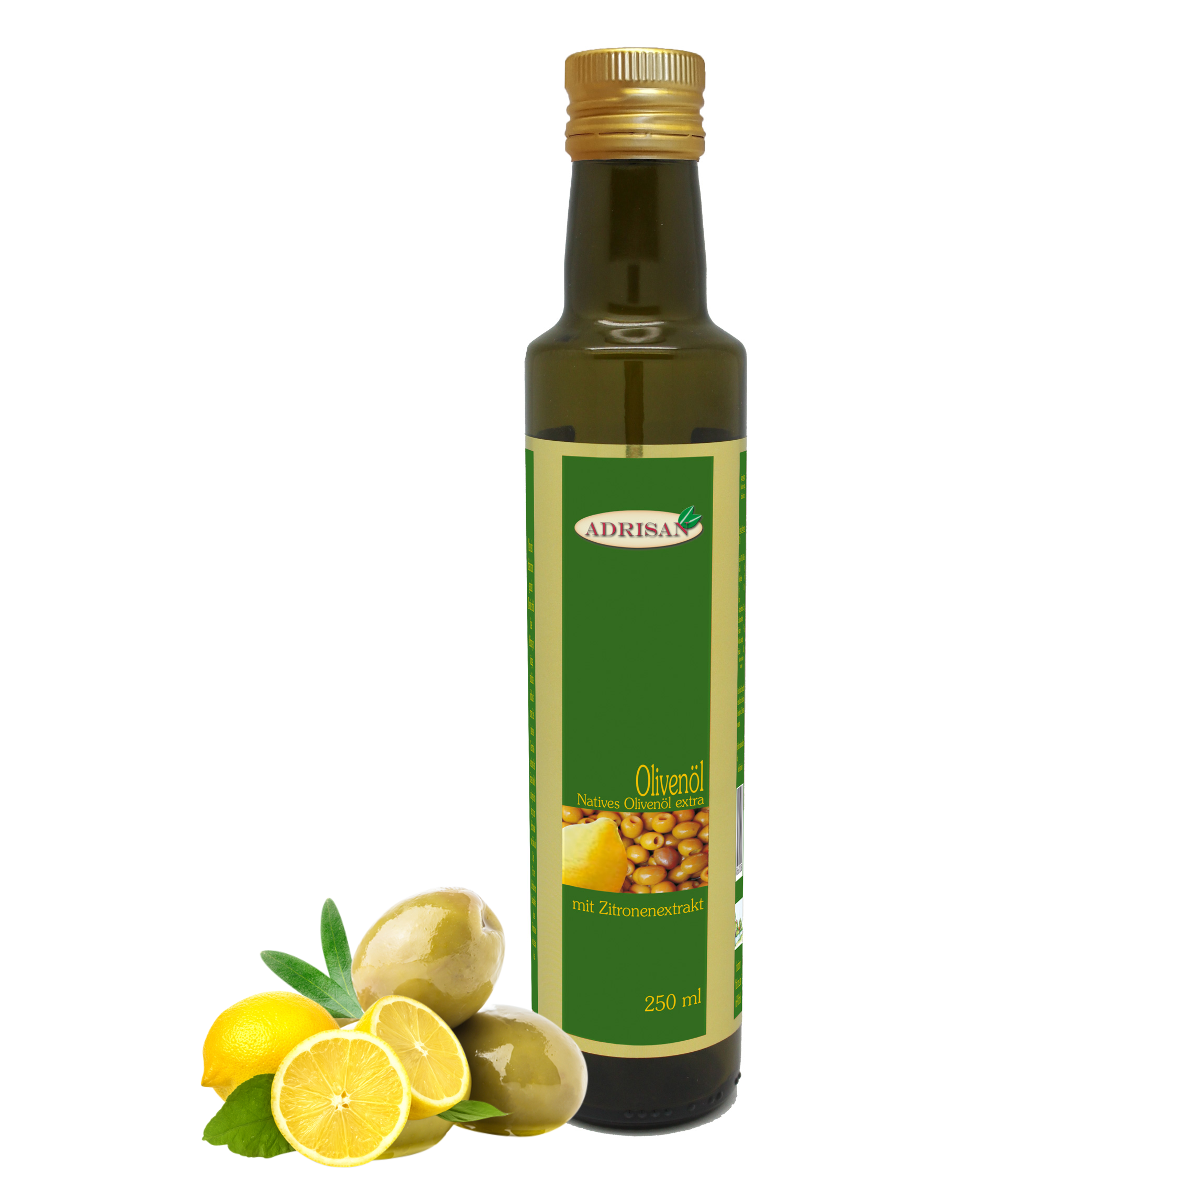 Adrisan Olivenöl extra vergine mit Zitrone 250 ml